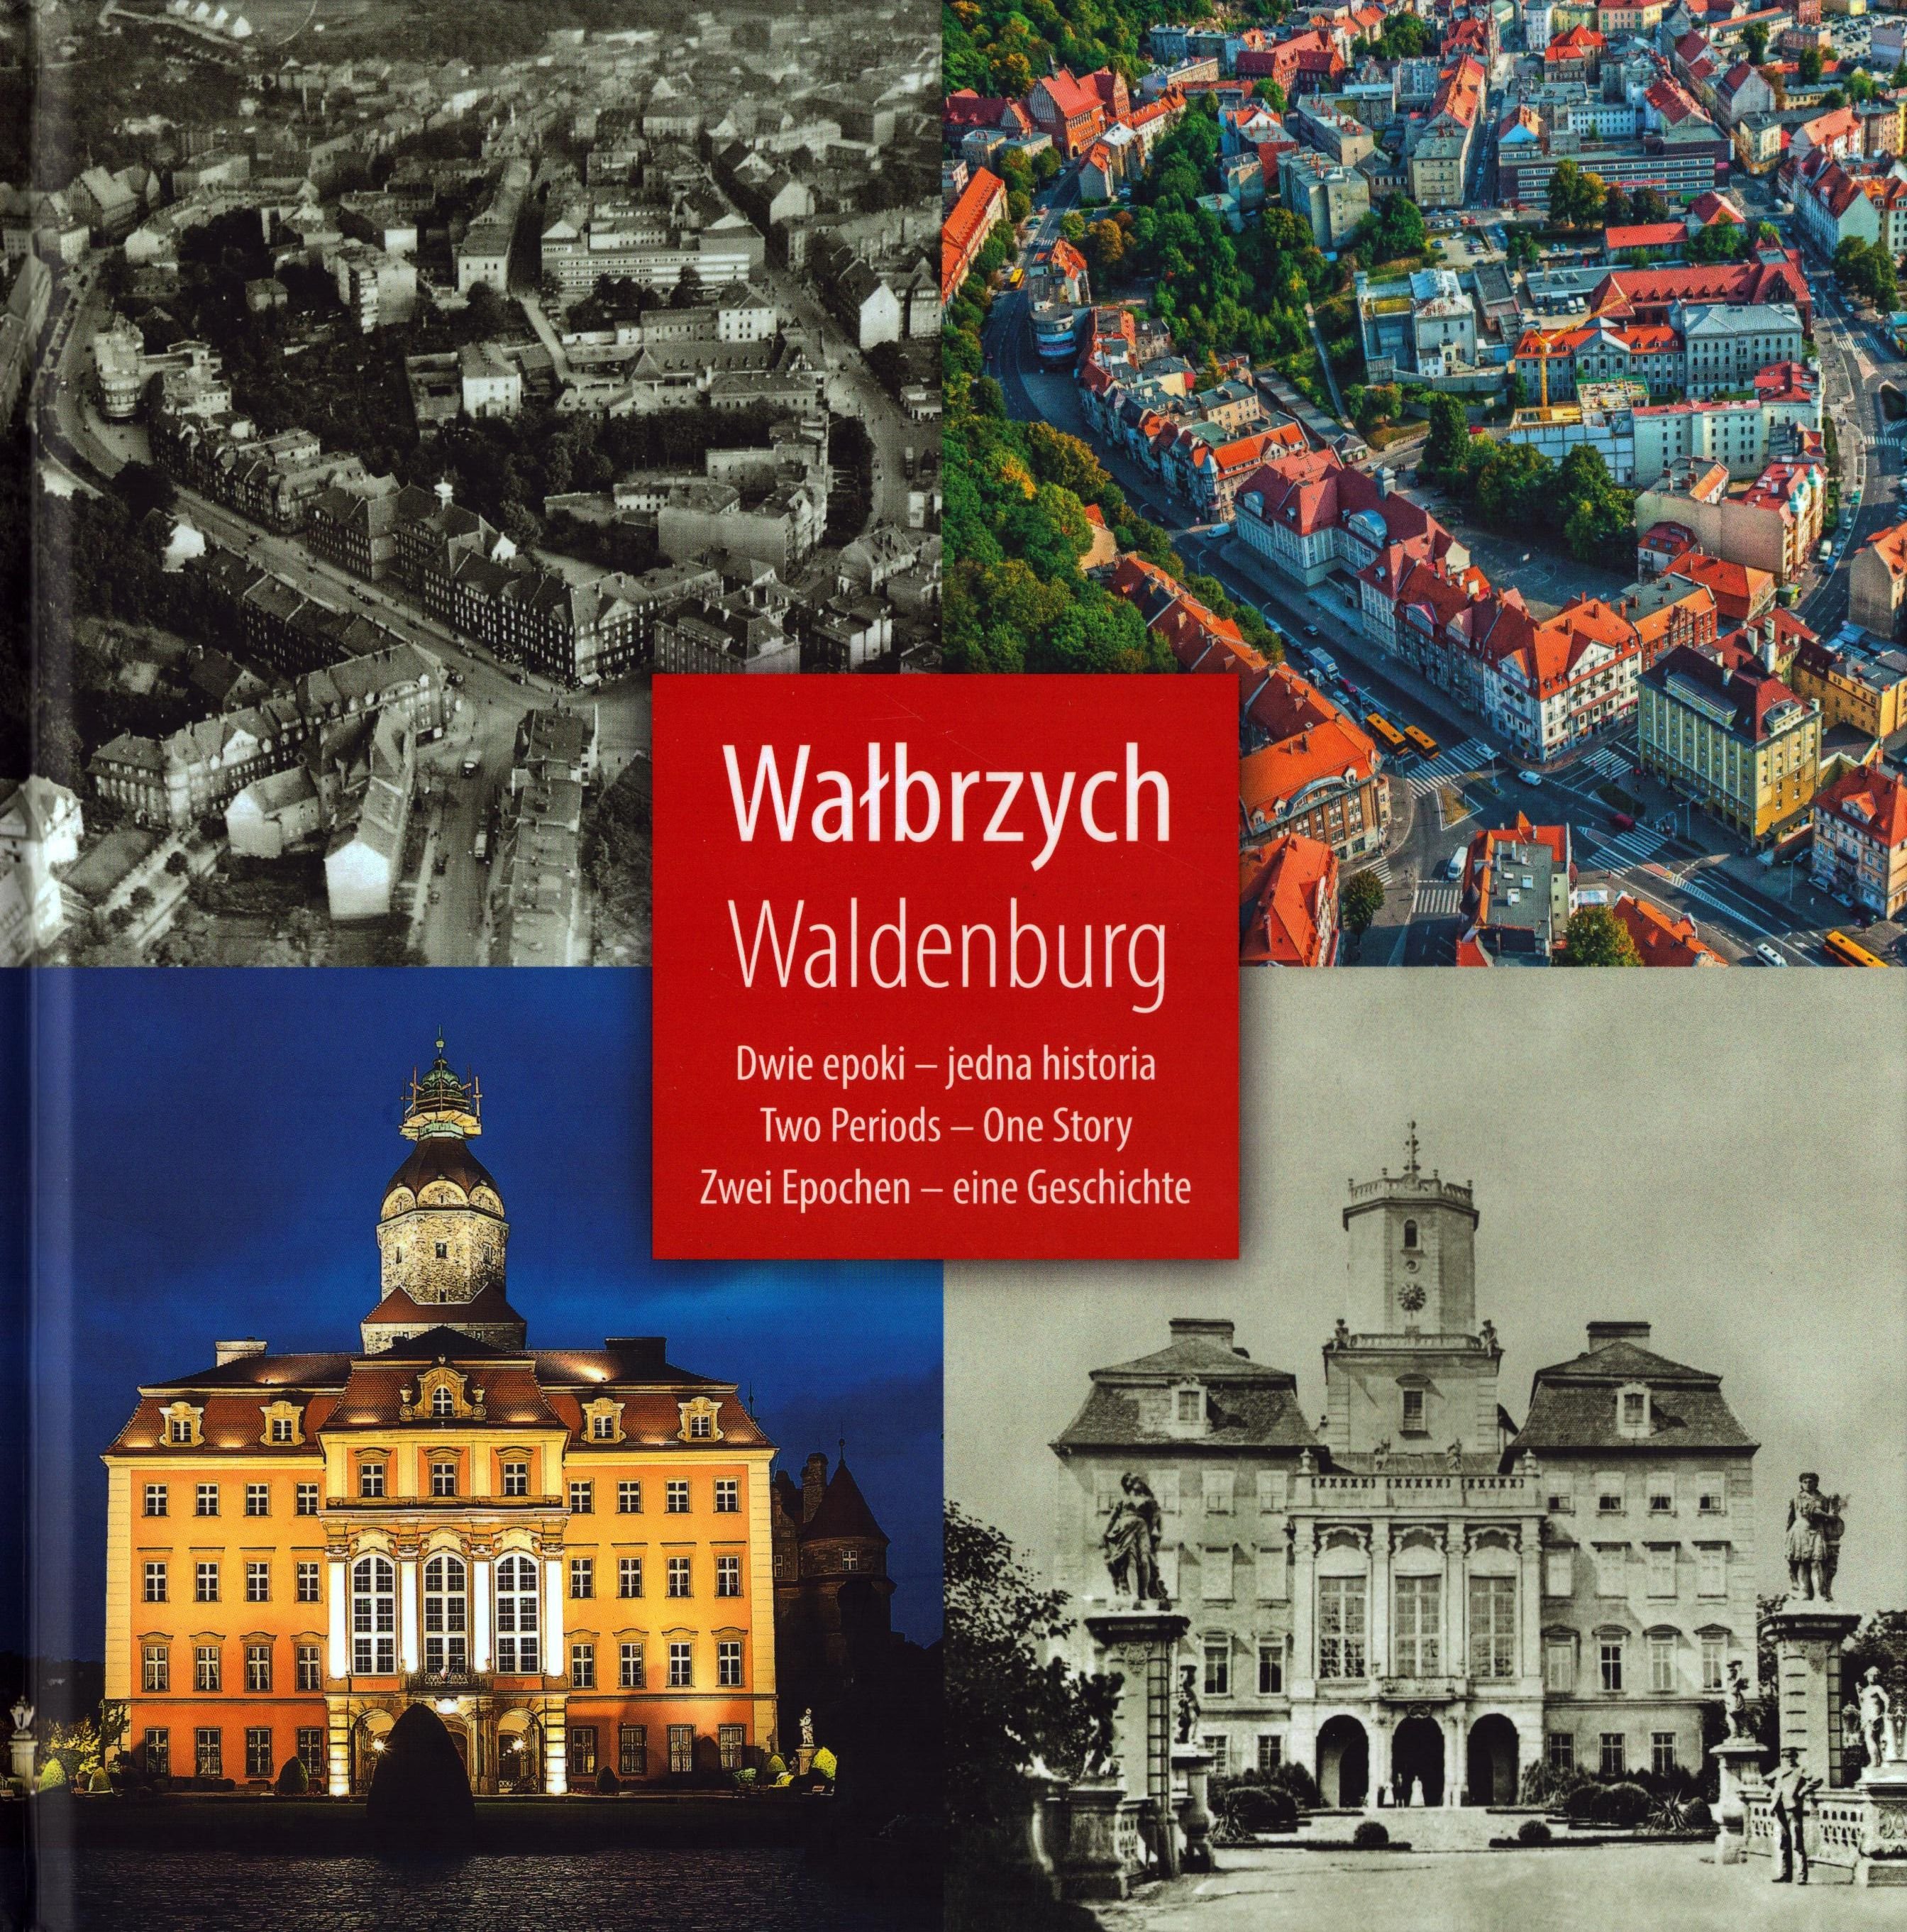 Walbrzych - Waldenburg (Archiv SAXONIA-FREIBERG-STIFTUNG CC BY-NC-SA)